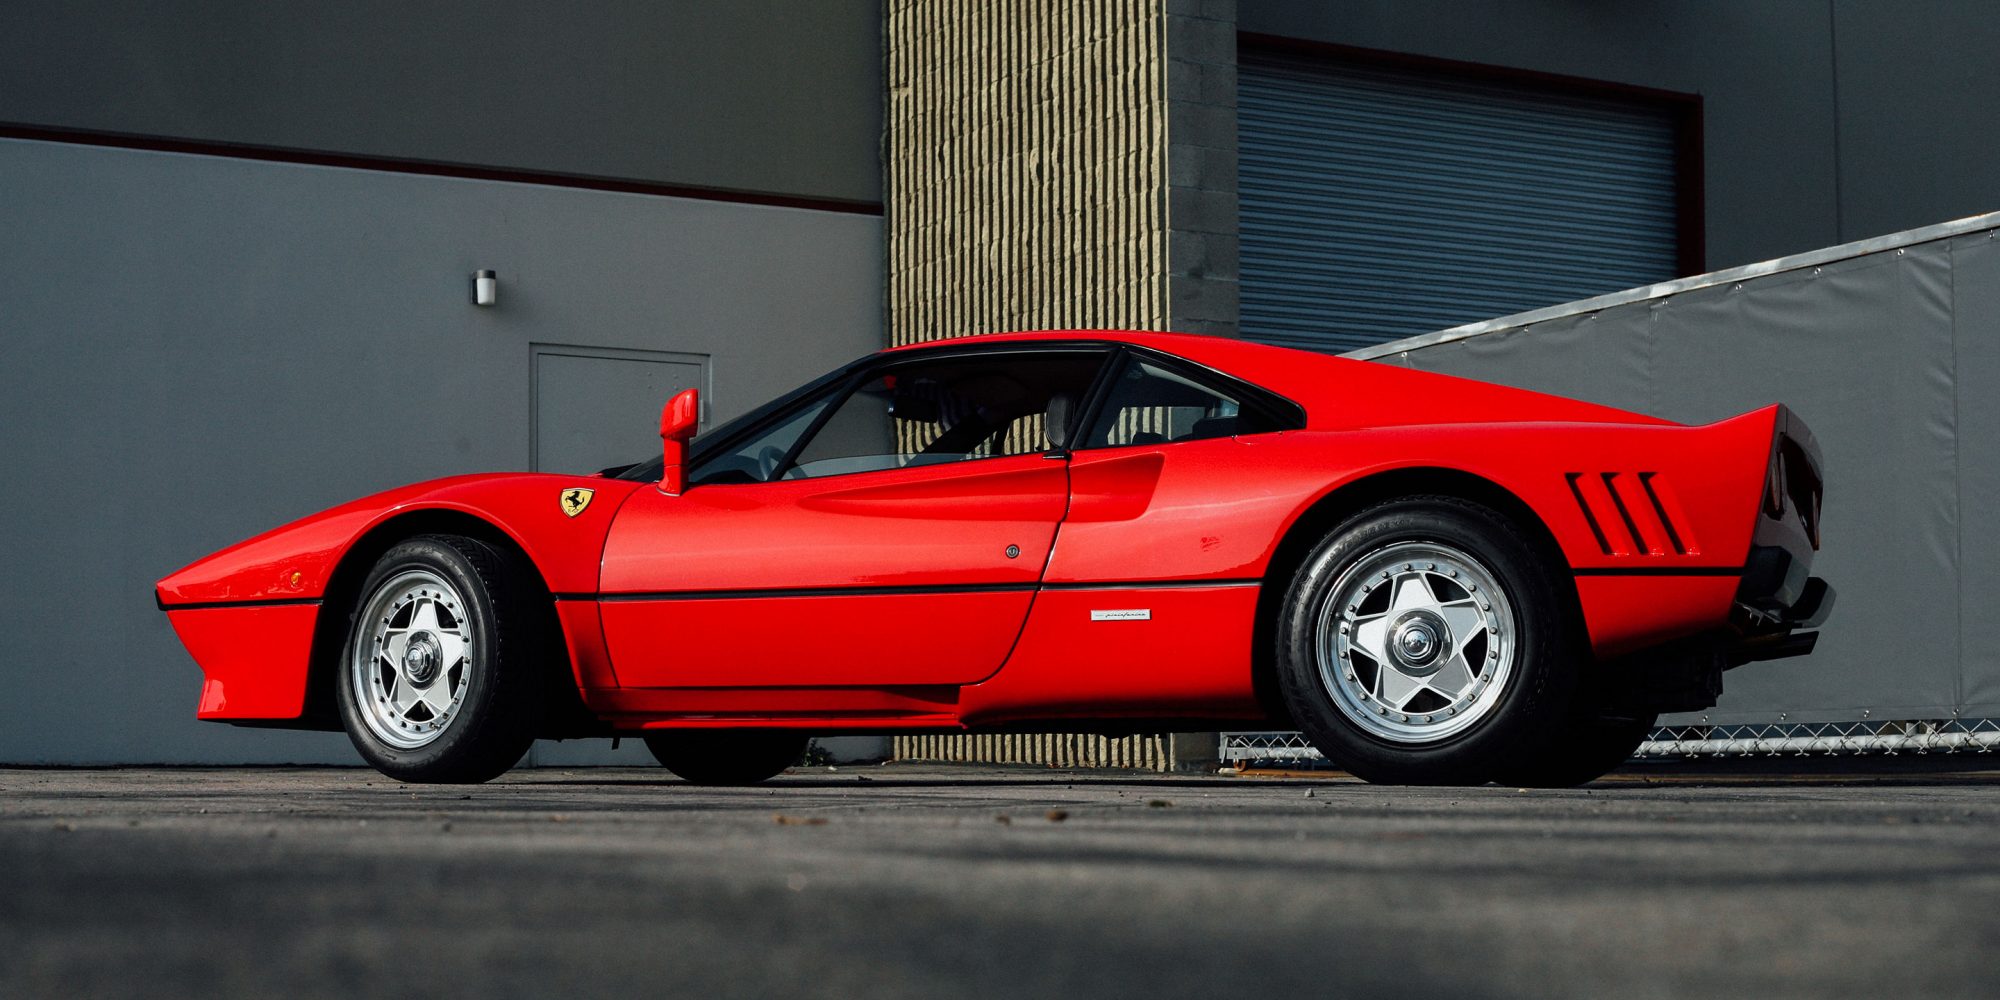 Ferrari 288 GTO Ники Лауда: механическое чудо музейного качества